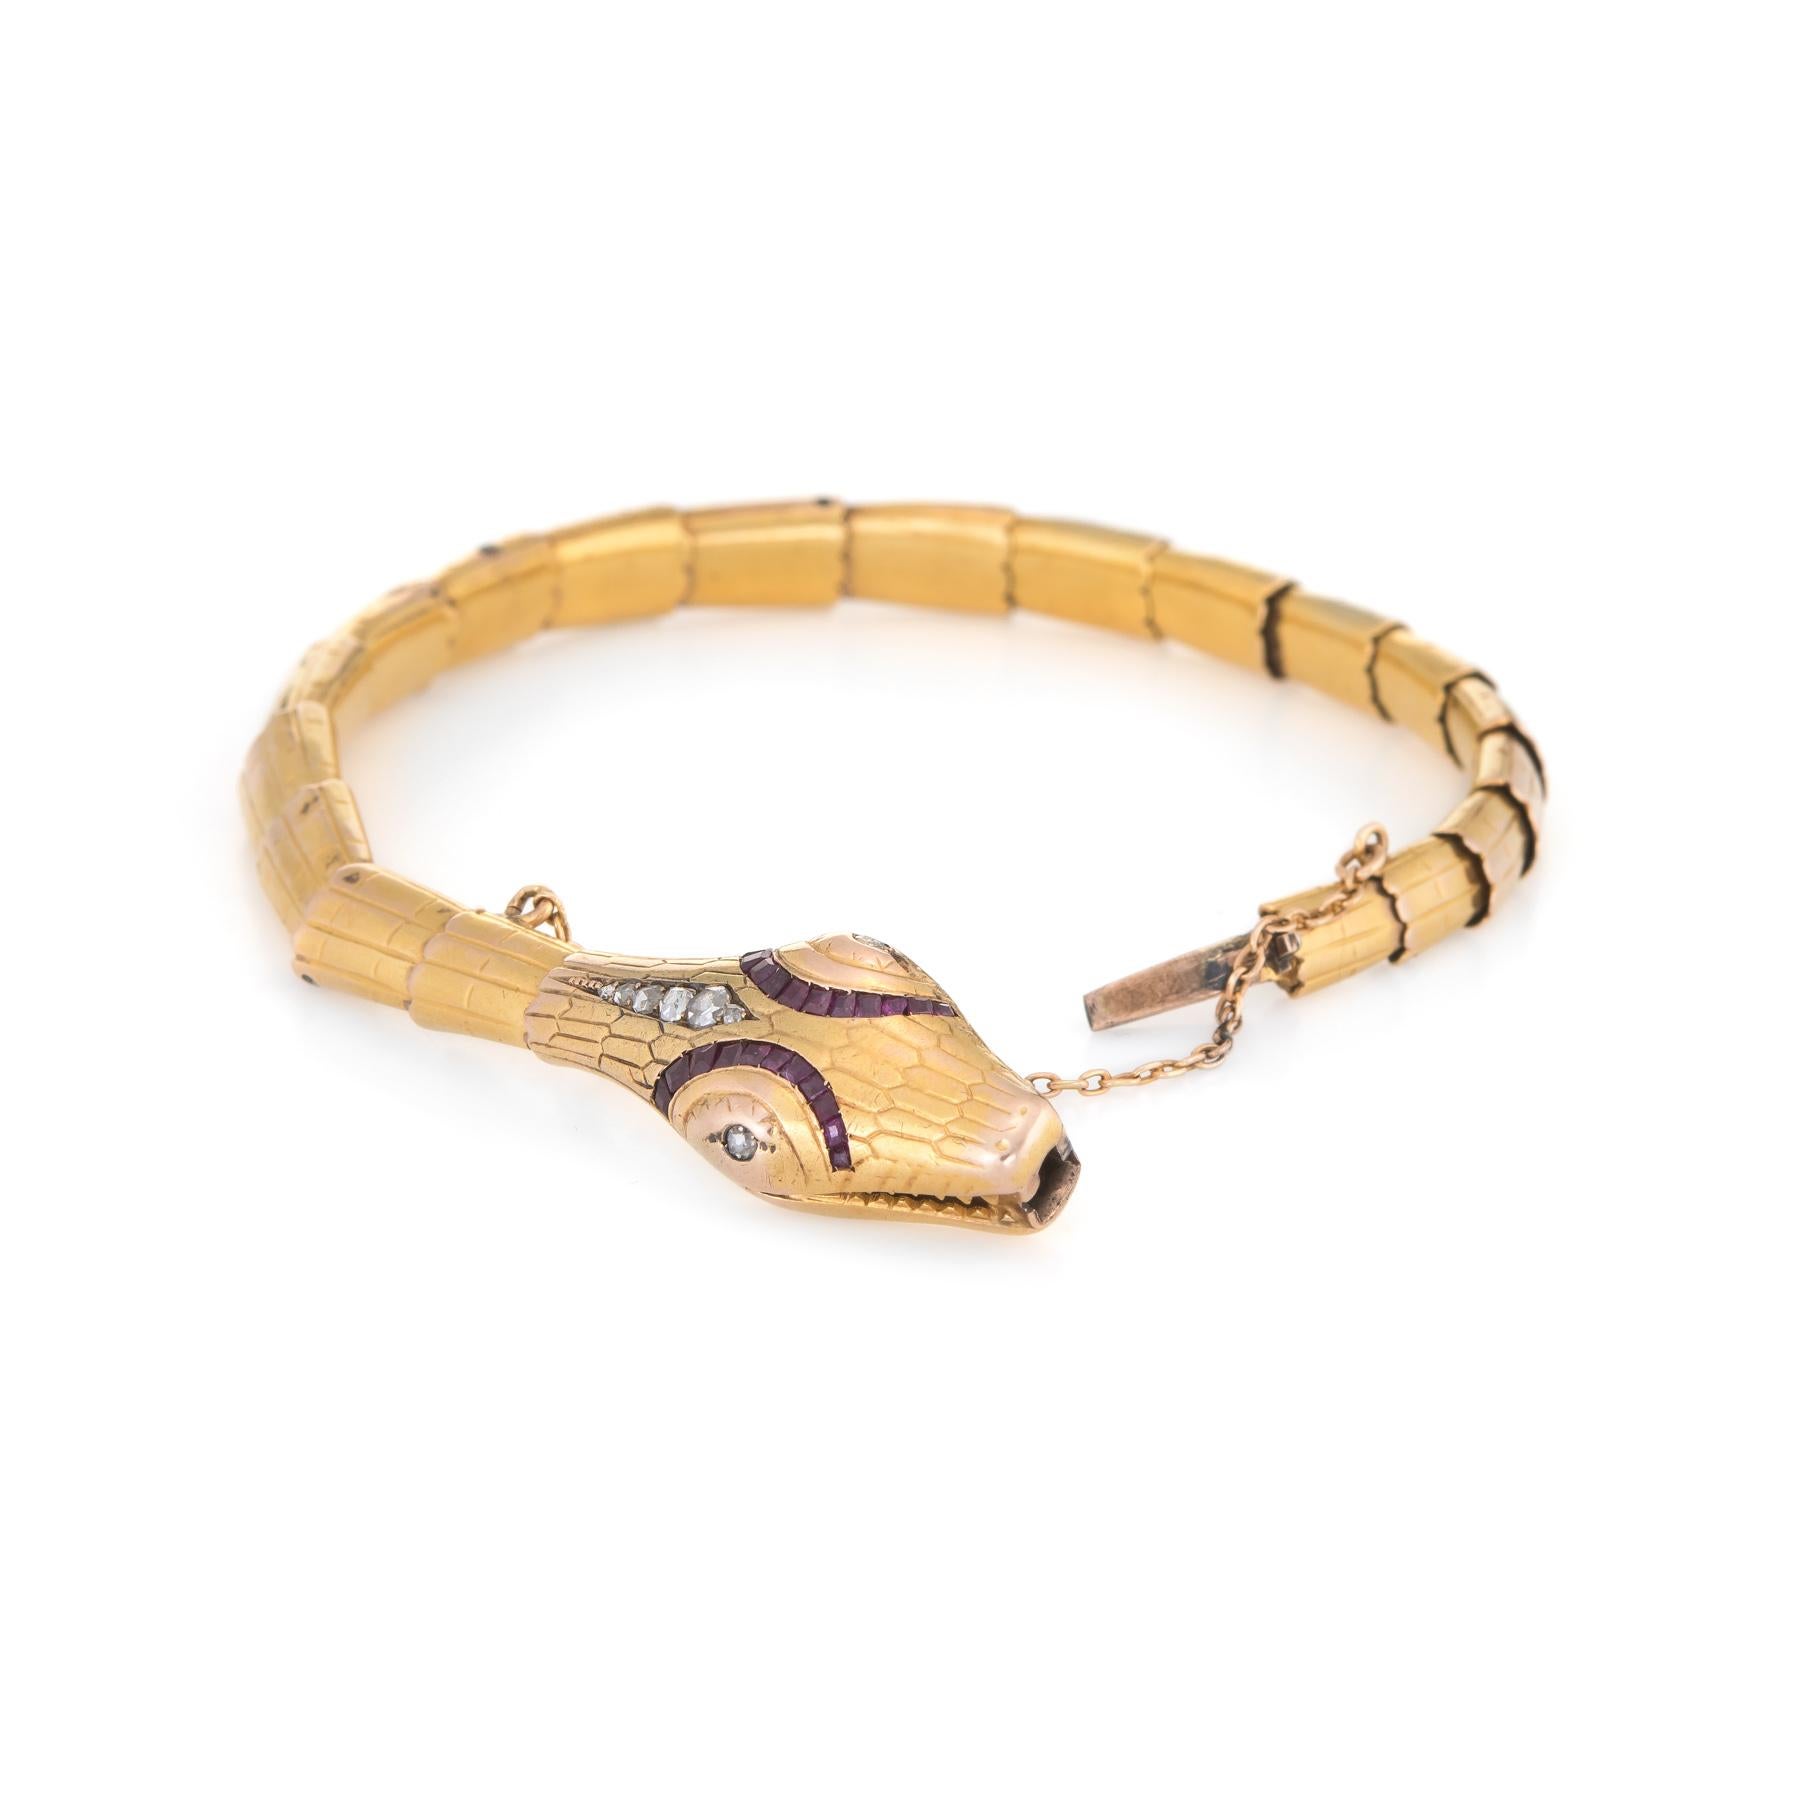 Bracelet serpent d'époque édouardienne (vers 1907) finement détaillé, réalisé en or jaune 18 carats. 

Les diamants taille rose sont de taille graduelle et totalisent environ 0,12 carats (couleur I-J et pureté I1). Les rubis taillés en boîte